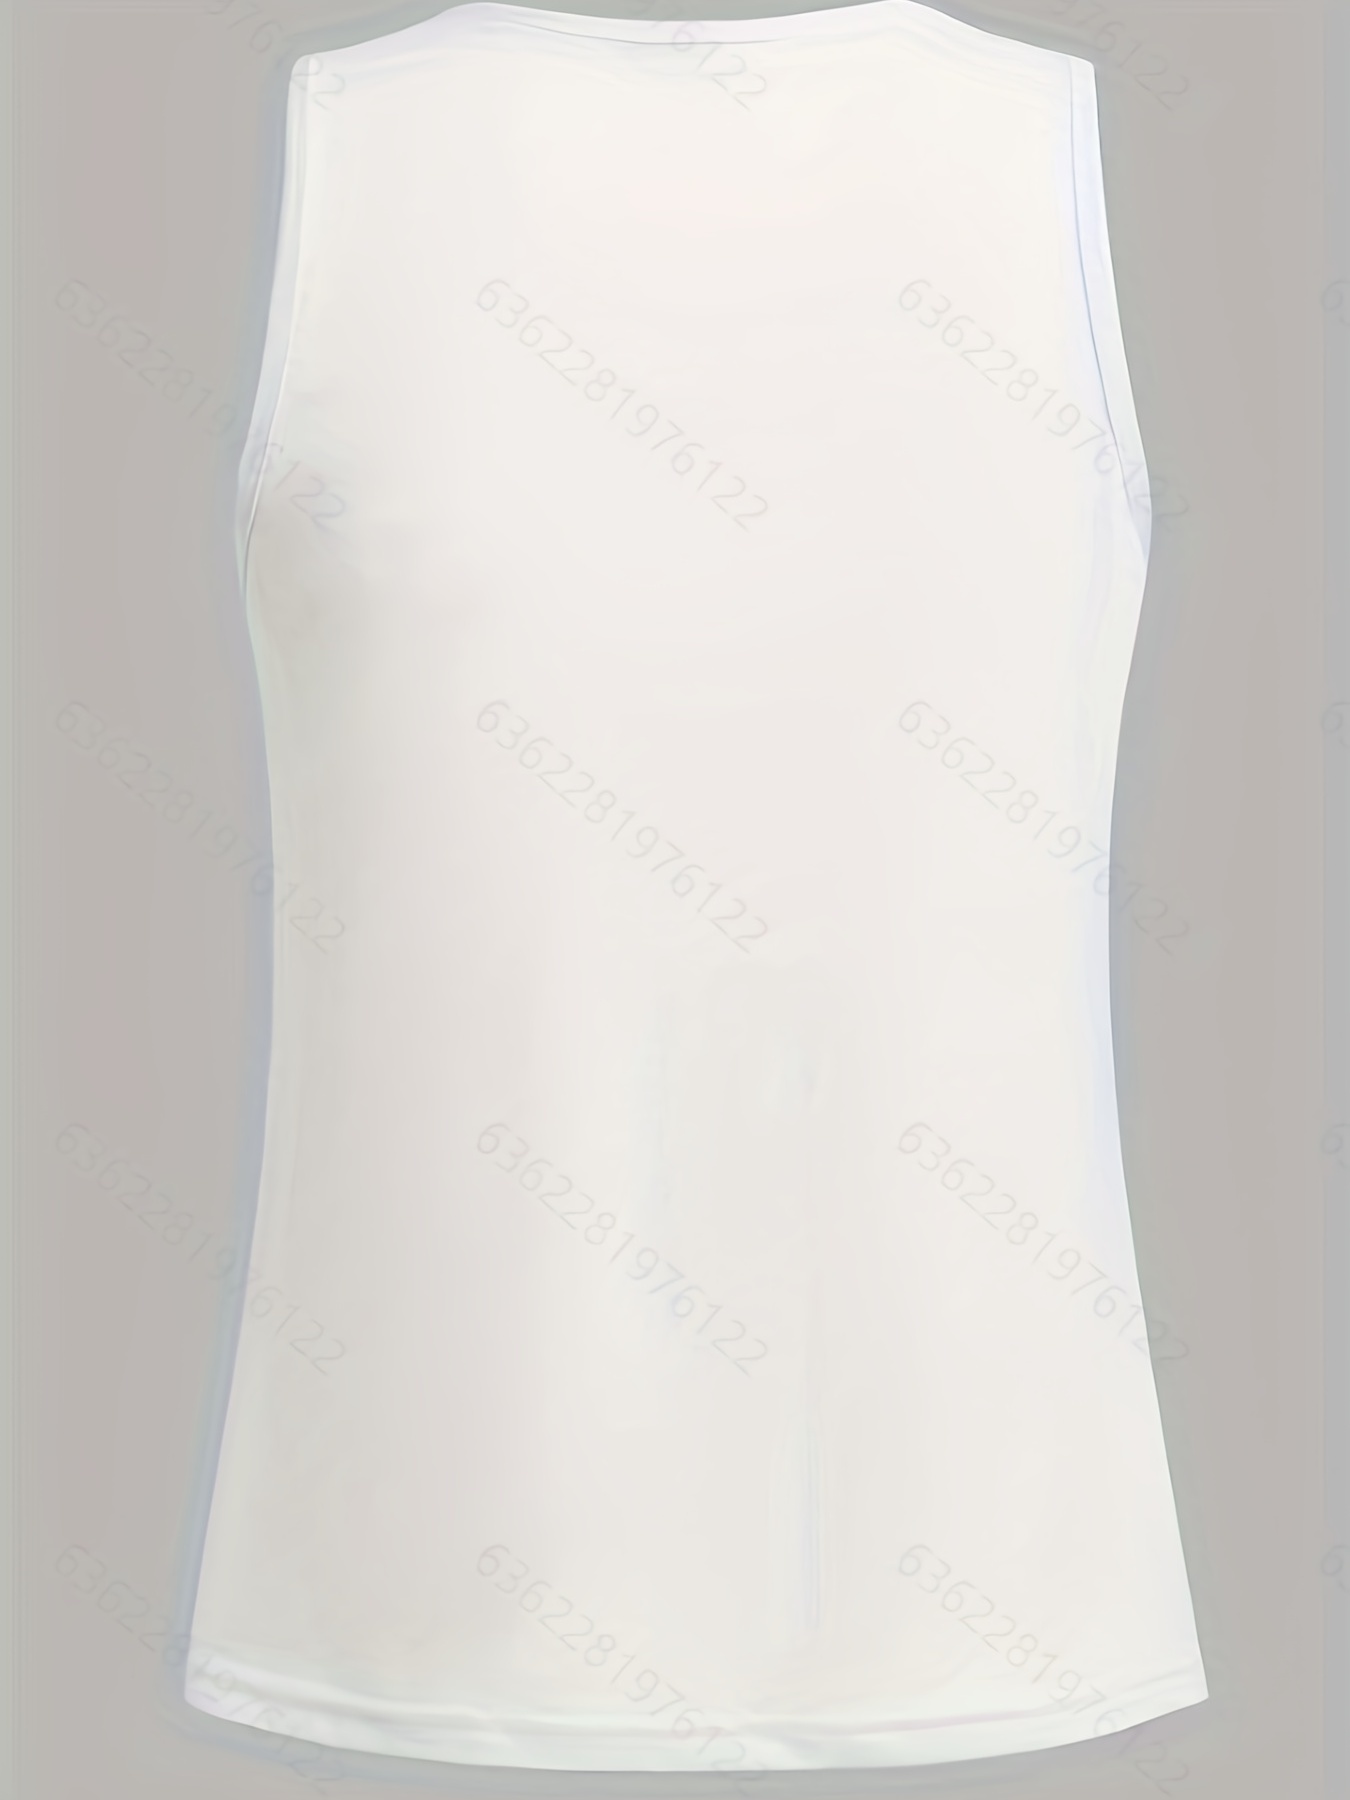  Casual White Sleeveless Cotton Cami Top Women Fashion